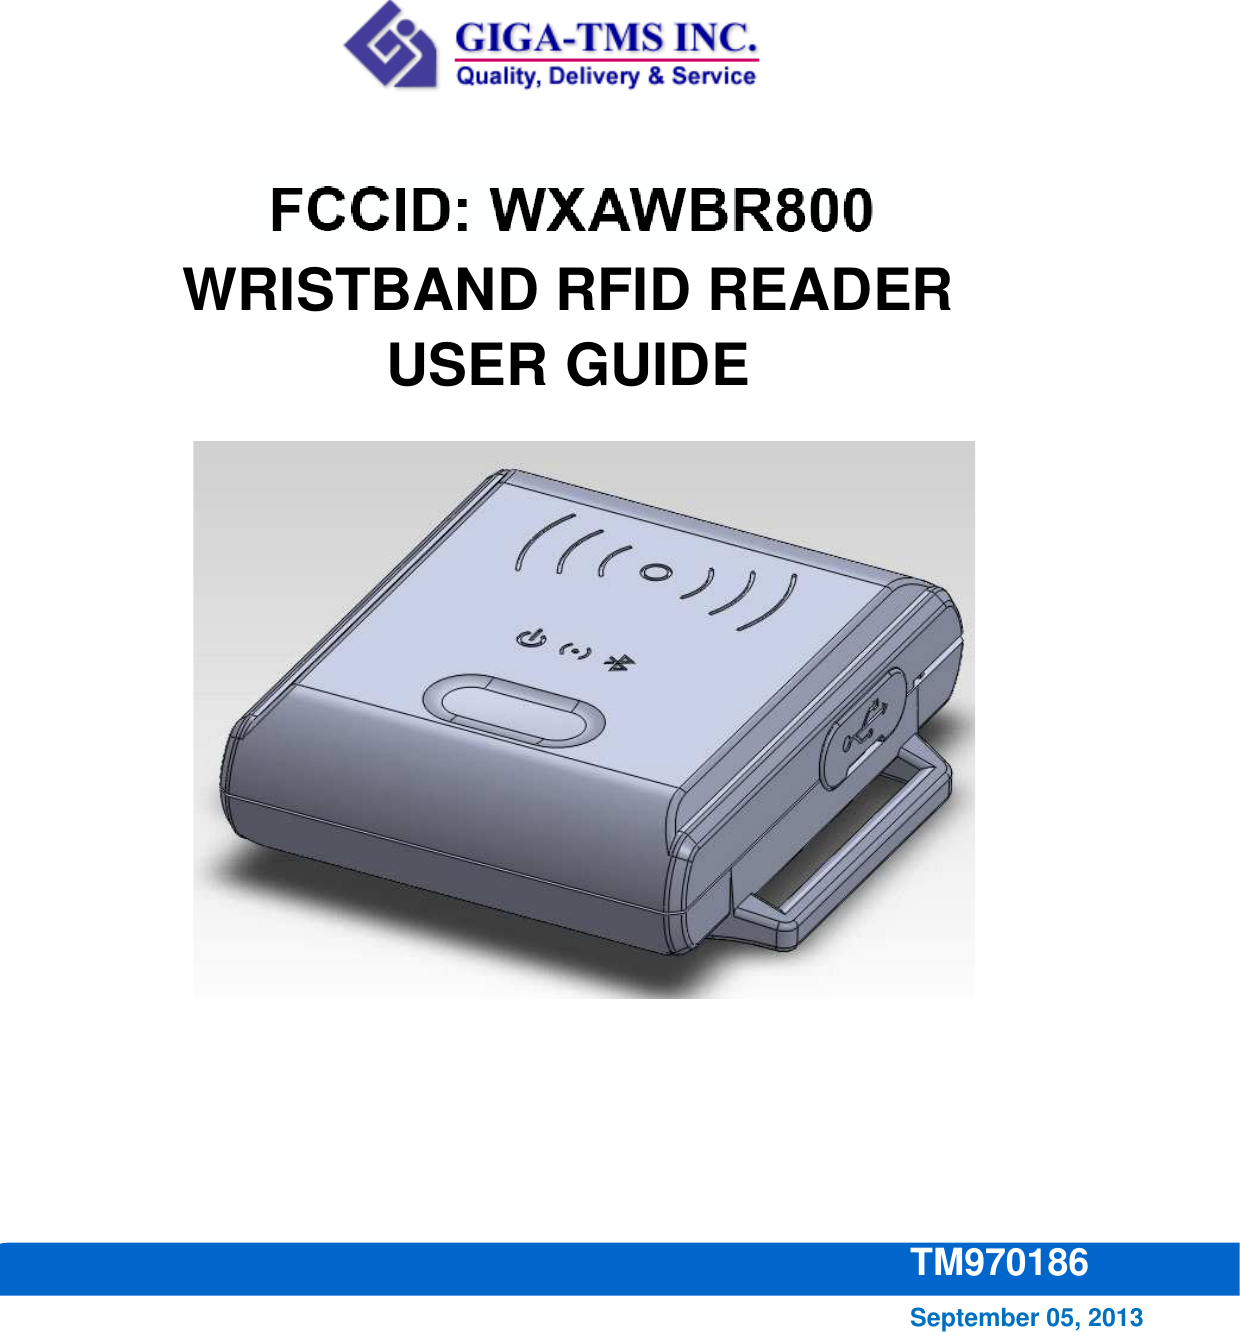                           WBR800   WRISTBAND RFID READER USER GUIDE  September 05, 2013 TM970186 